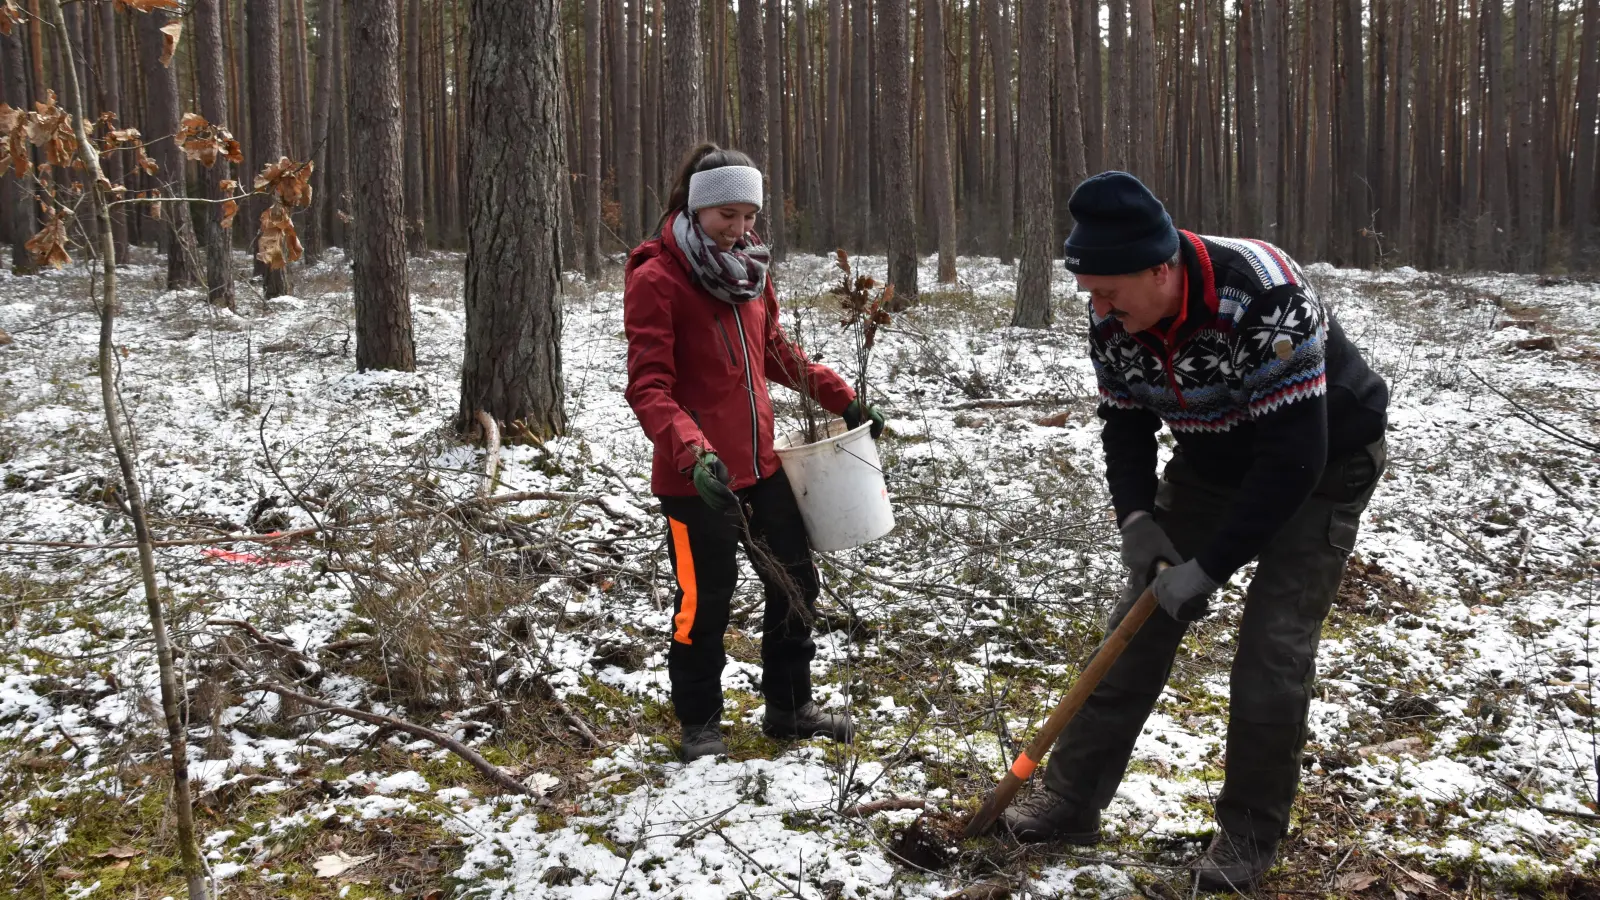 Vater und Tochter pflanzen Bäume fürs Klima in ihrem Privatwald: Annika und Herbert Hechtel nutzen die frostfreien Tage für die standortgerechte Aufforstung im Altbestand (Foto: Silvia Schäfer)